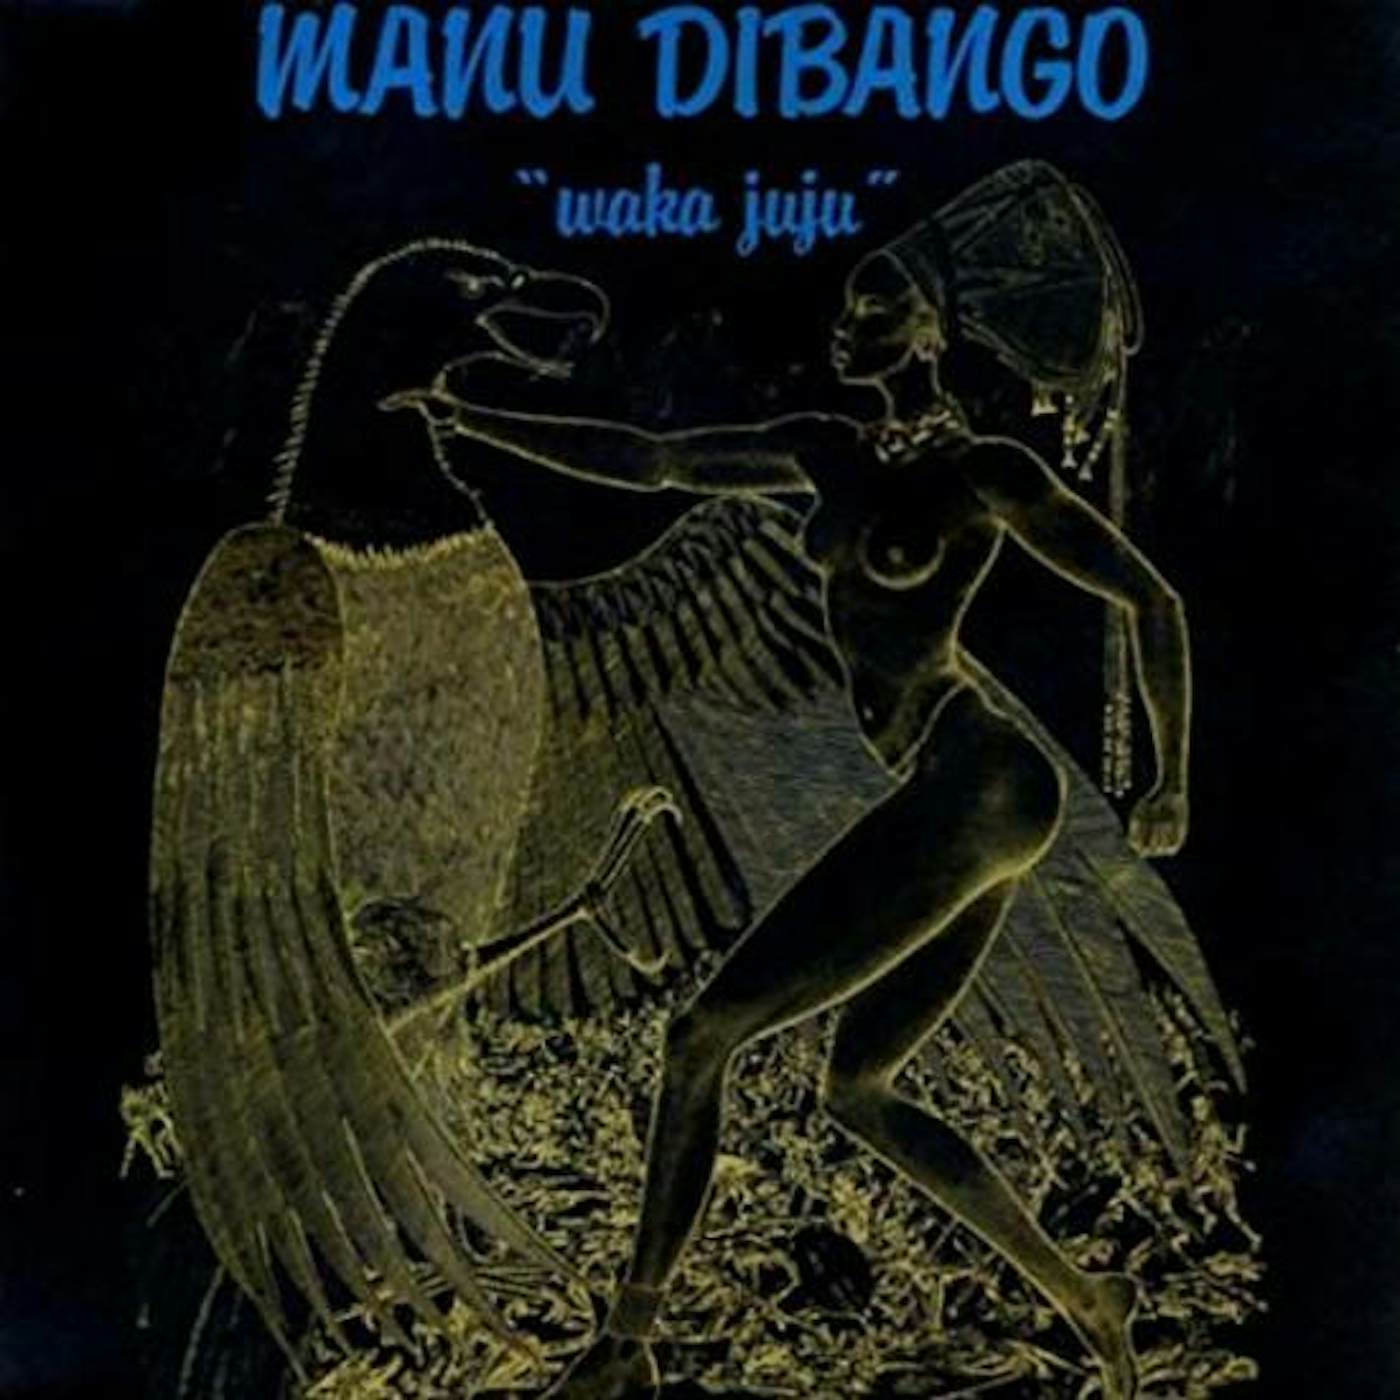 Manu Dibango / Waka Juju - LP Vinyl